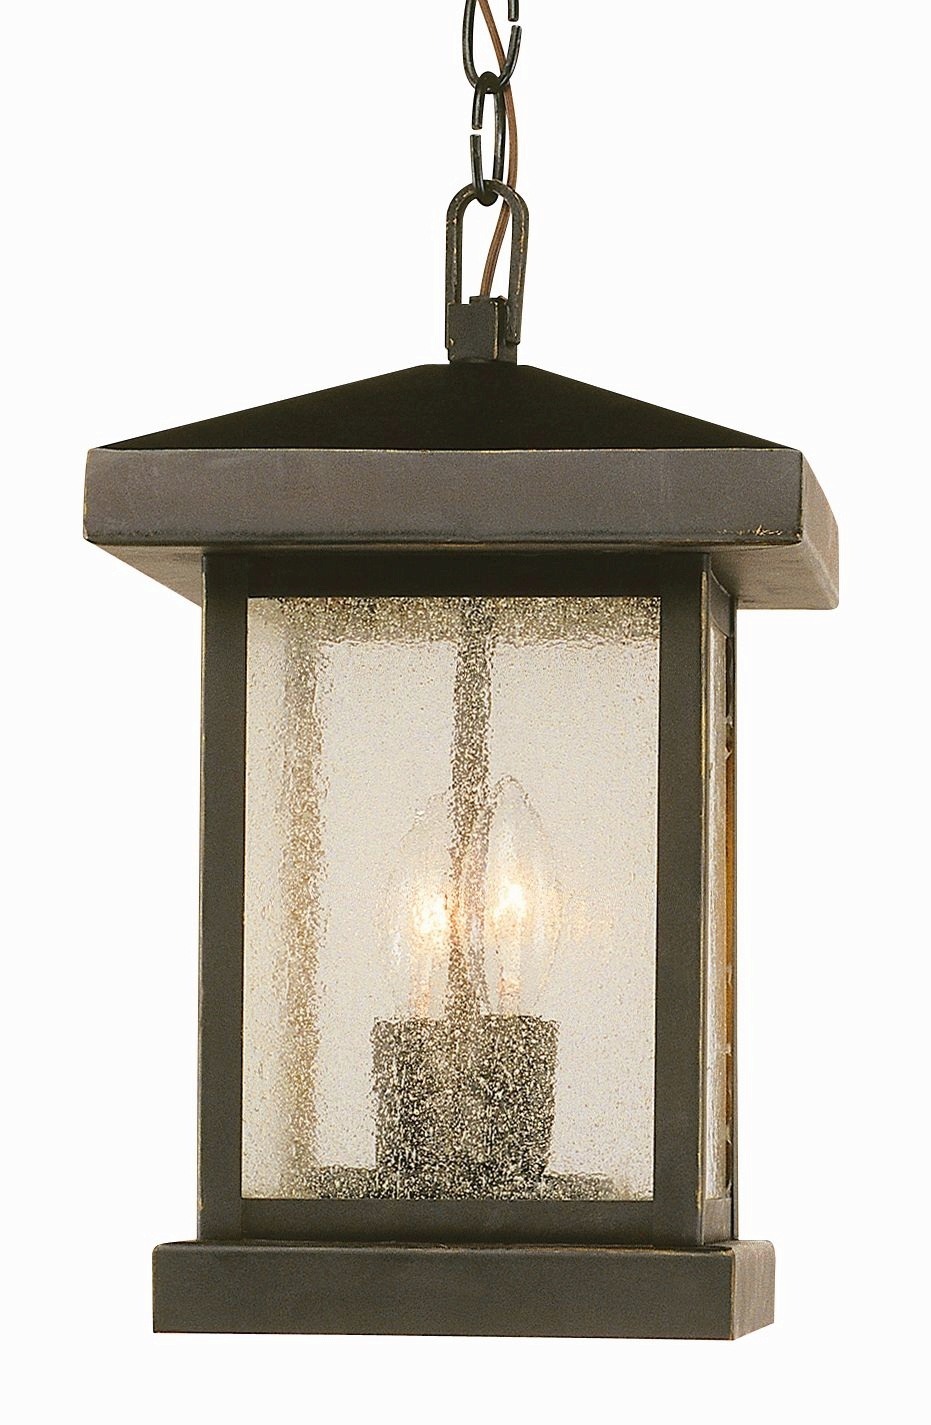 45643 WB-Trans Globe Lighting-Two Light Outdoor Hanging Lantern - image 1 of 2